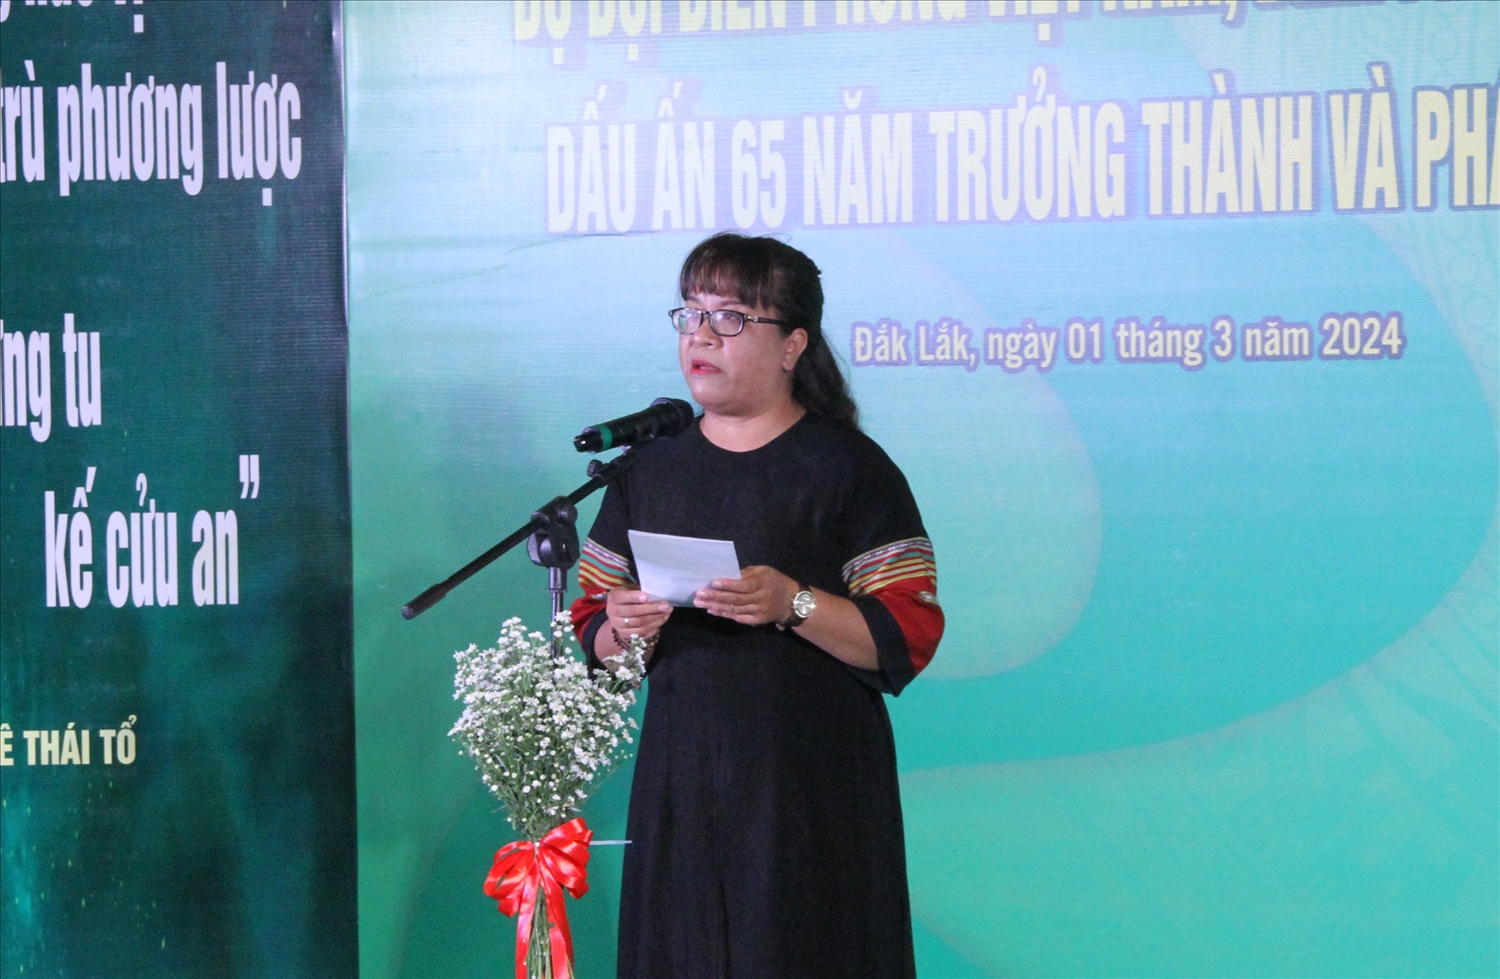 Chủ tịch Hội Văn học Nghệ thuật tỉnh Đắk Lắk, Trưởng Ban tổ chức triển lãm, nhà văn Niê Thanh Mai phát biểu tại triển lãm